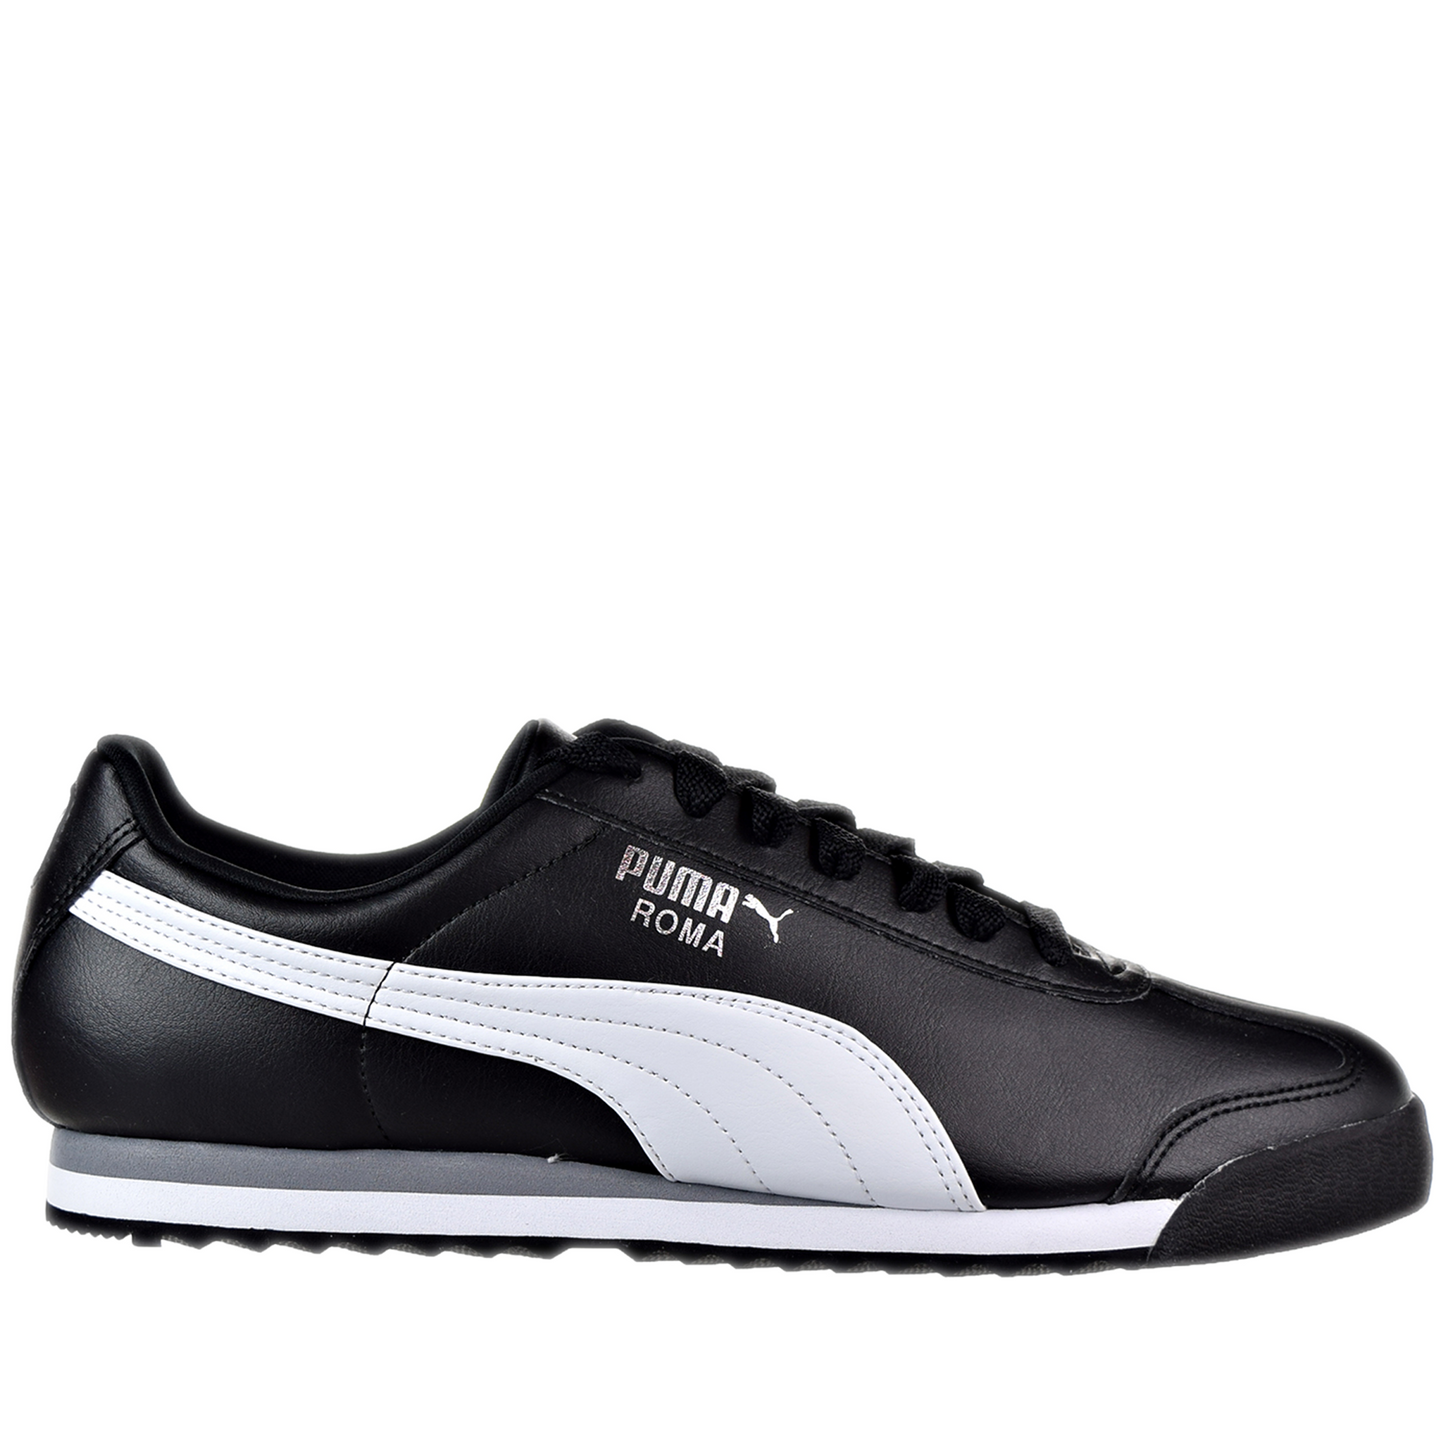 Men's Puma Roma Basic Shoes - Black/ White